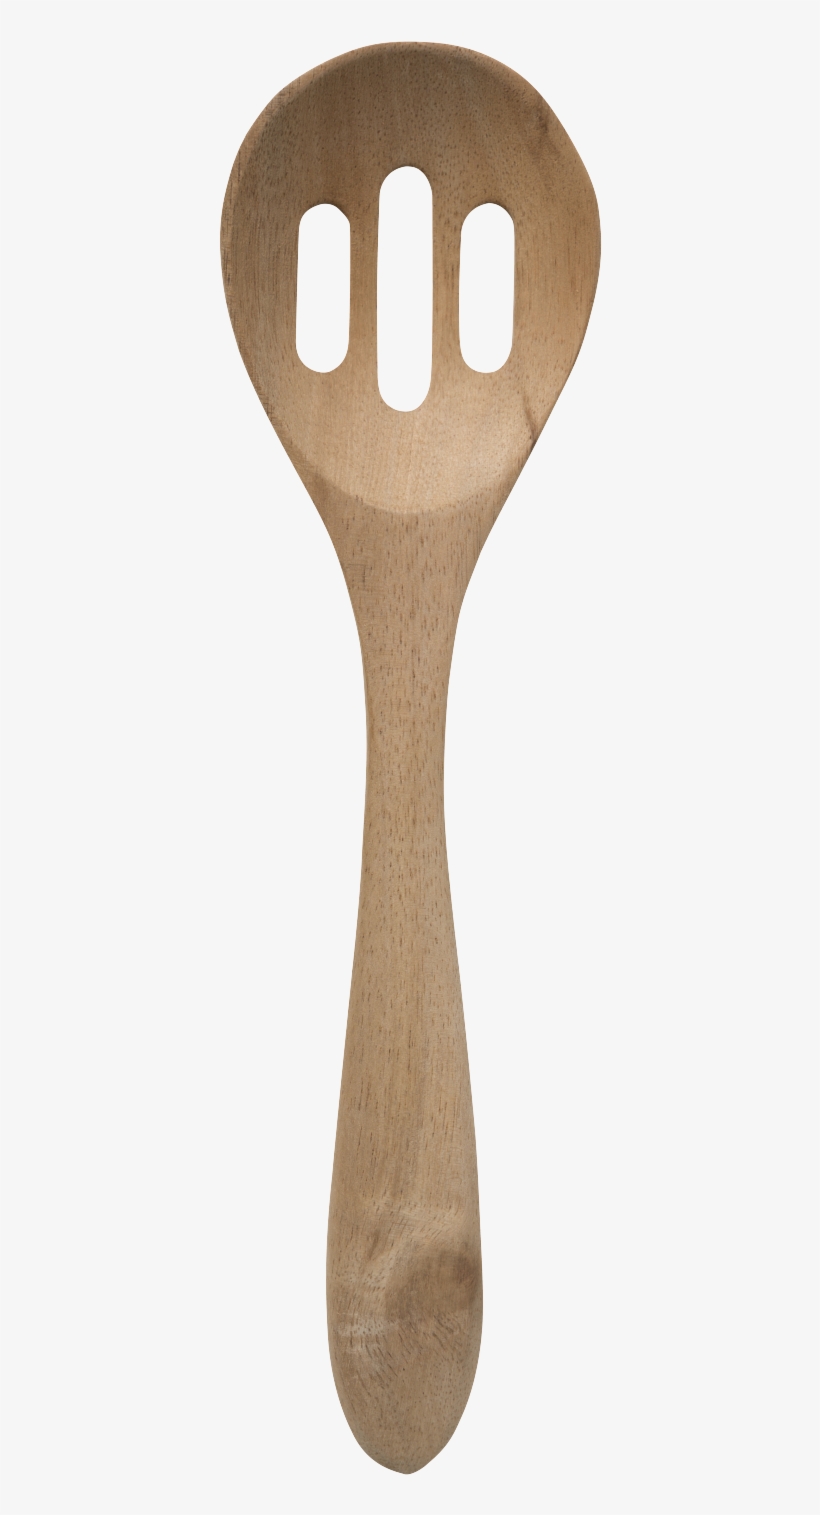 Oq2004 V=1521768552 - Wooden Spoon, transparent png #6056205